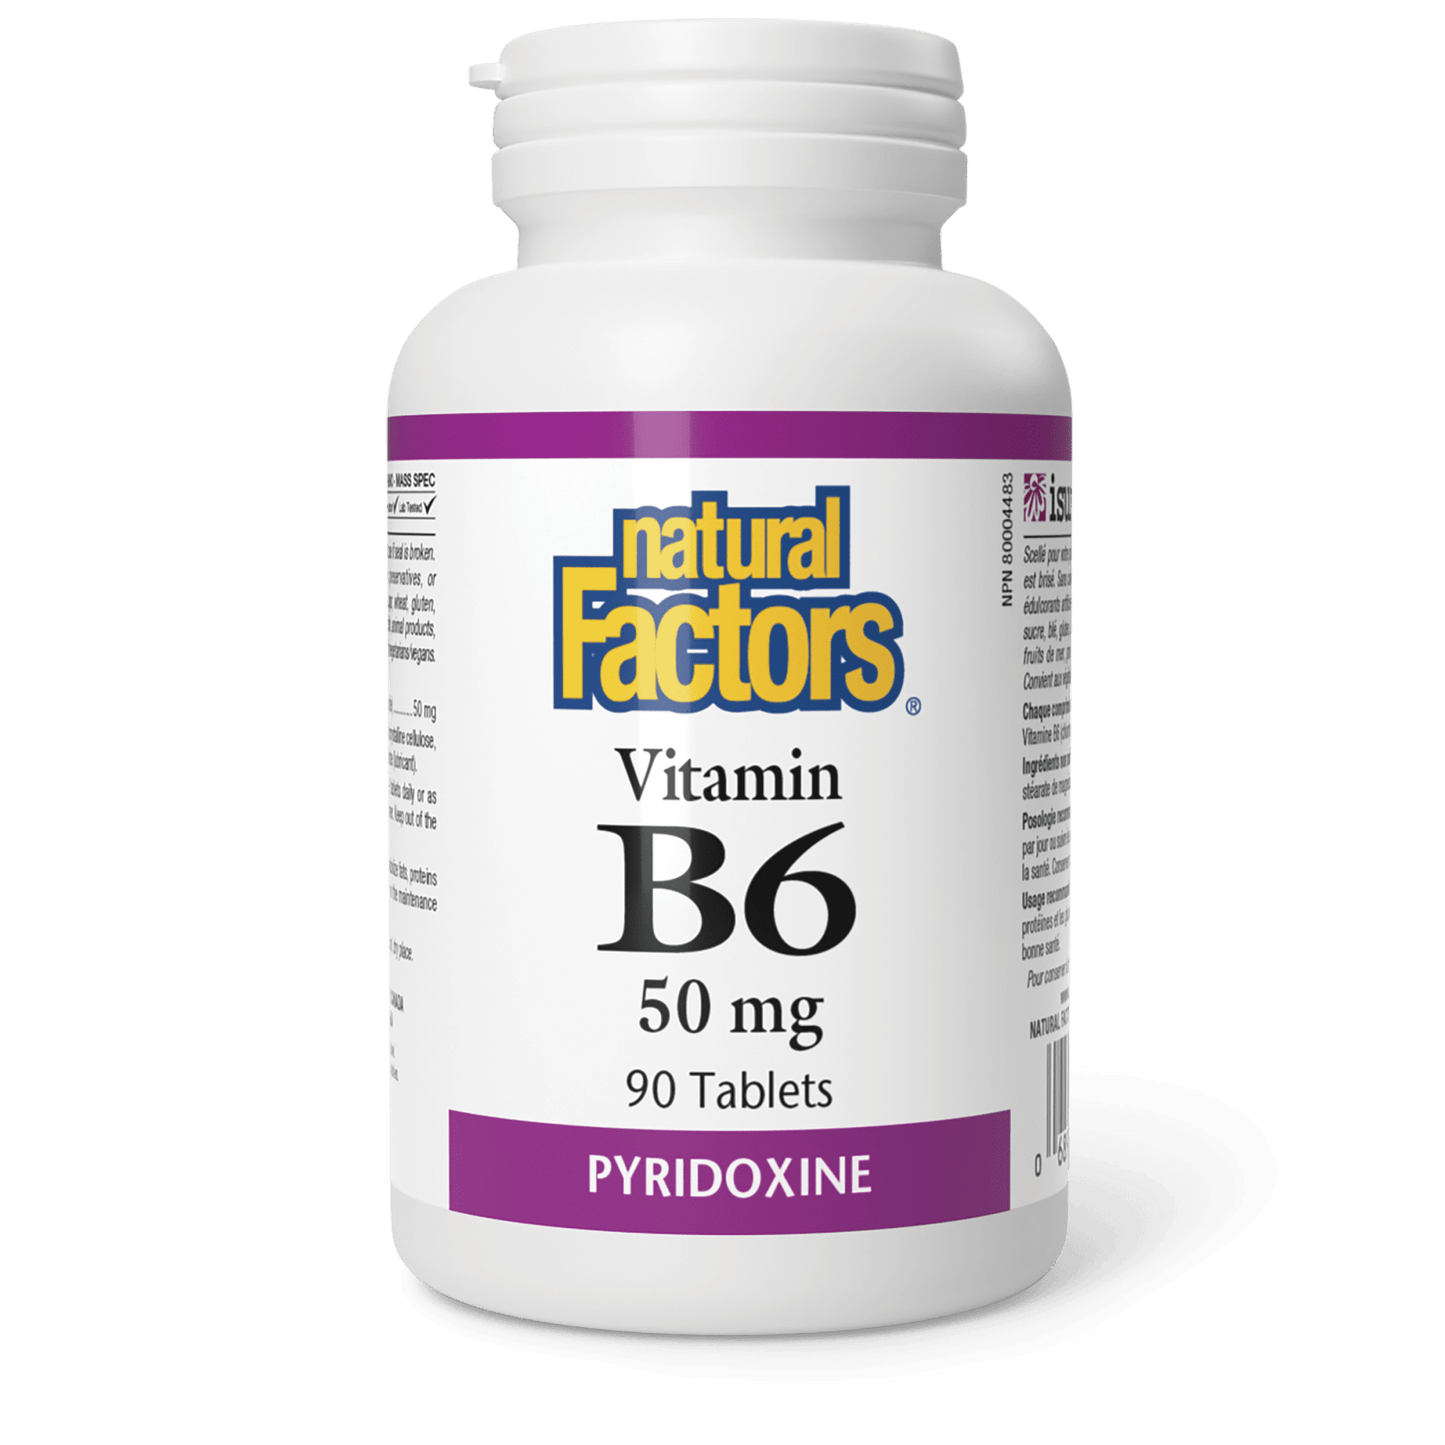 Vitamin B6 50 mg, Natural Factors|v|image|1230